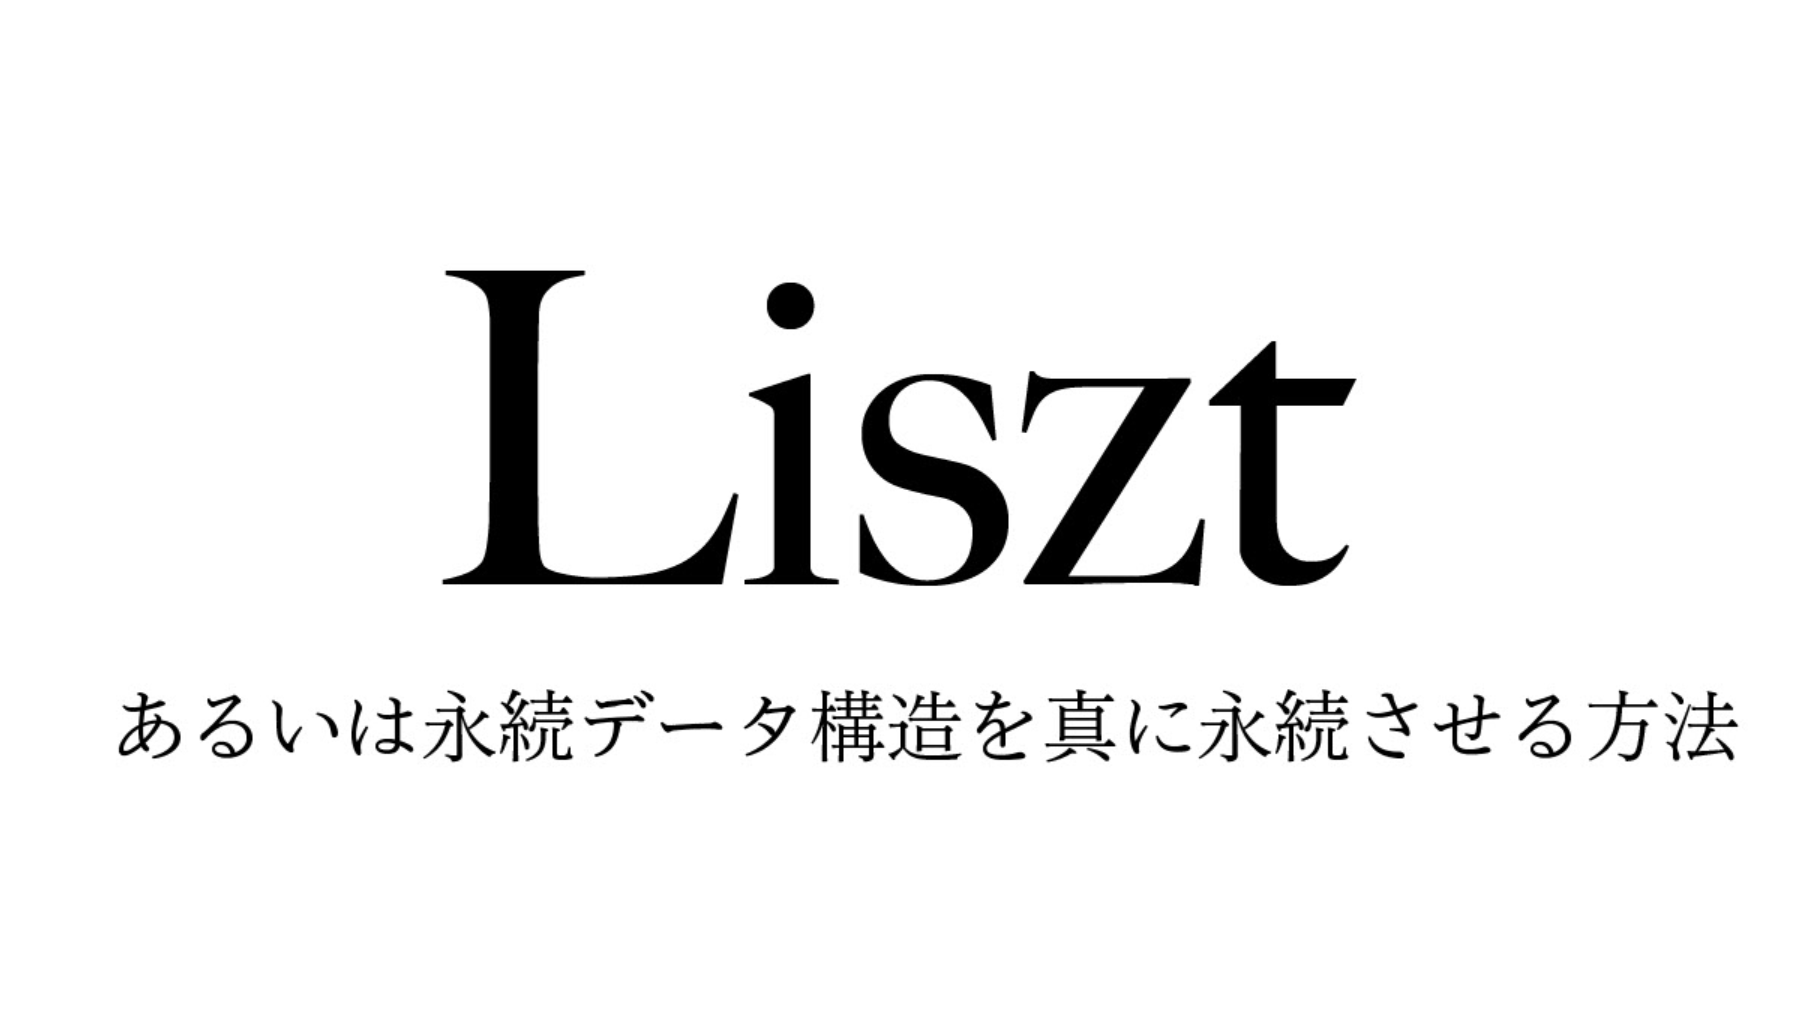 Liszt あるいは永続データ構造を真に永続させる方法